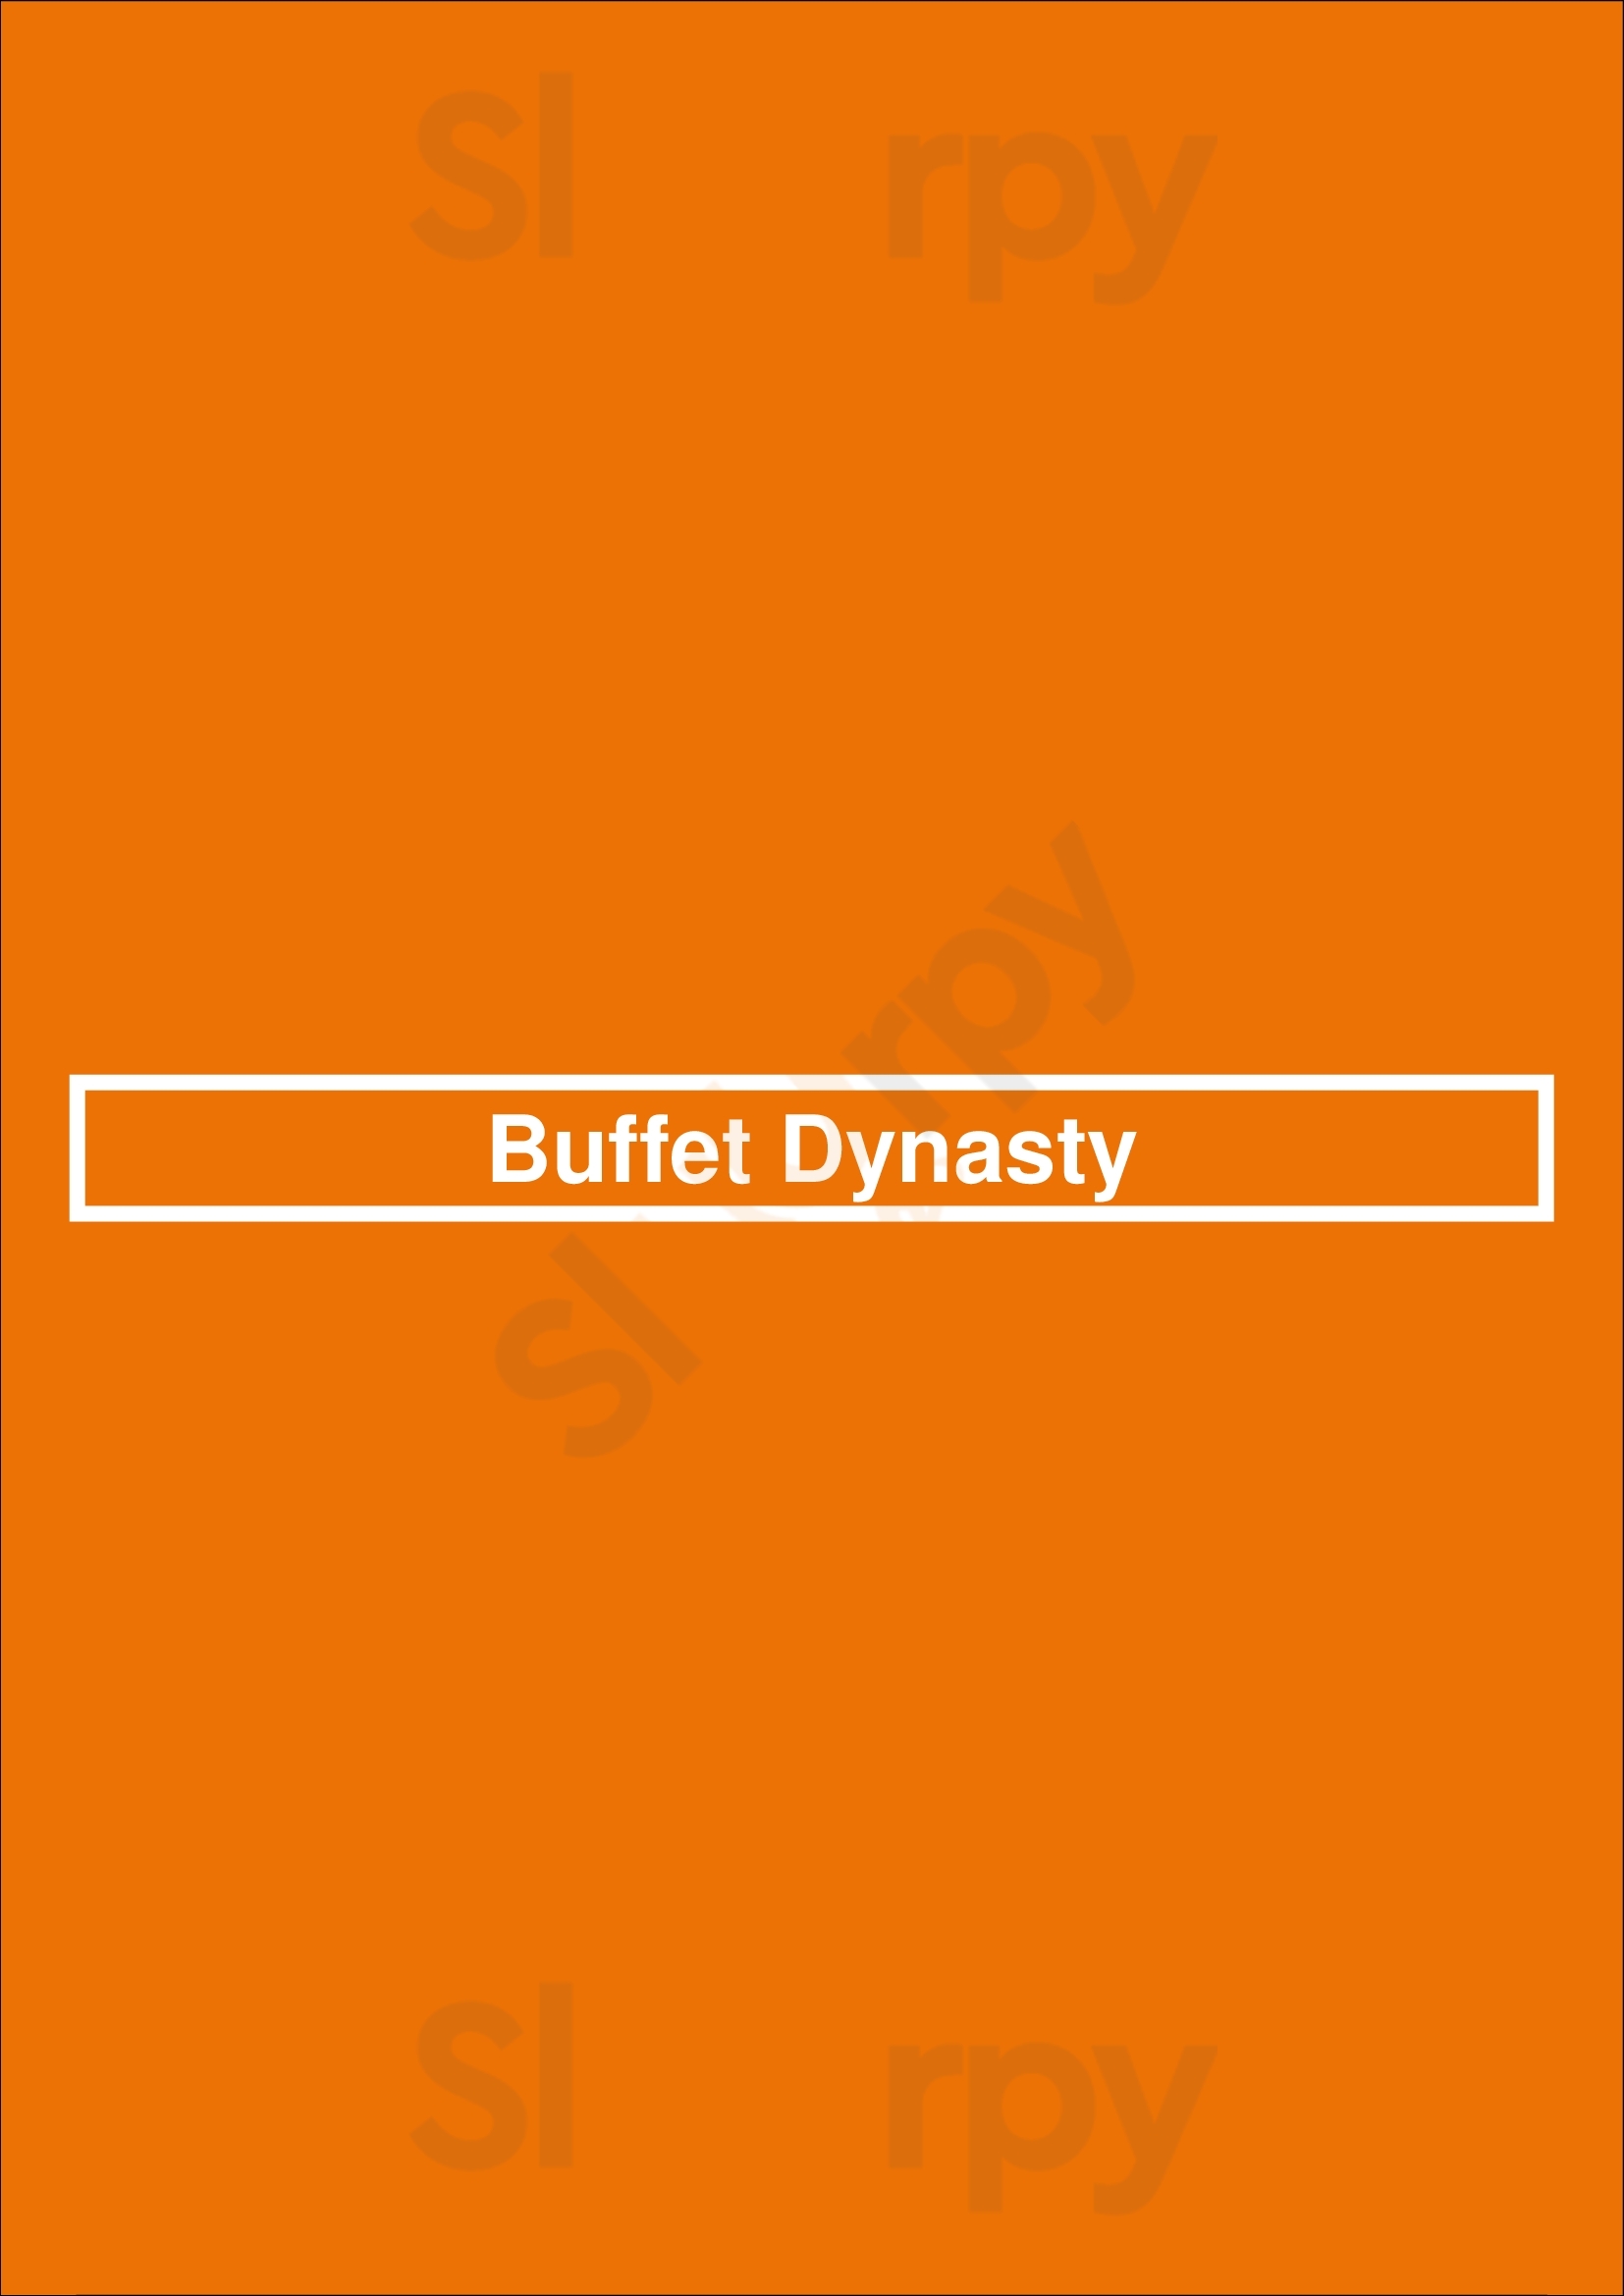 Buffet Dynasty Canton Menu - 1